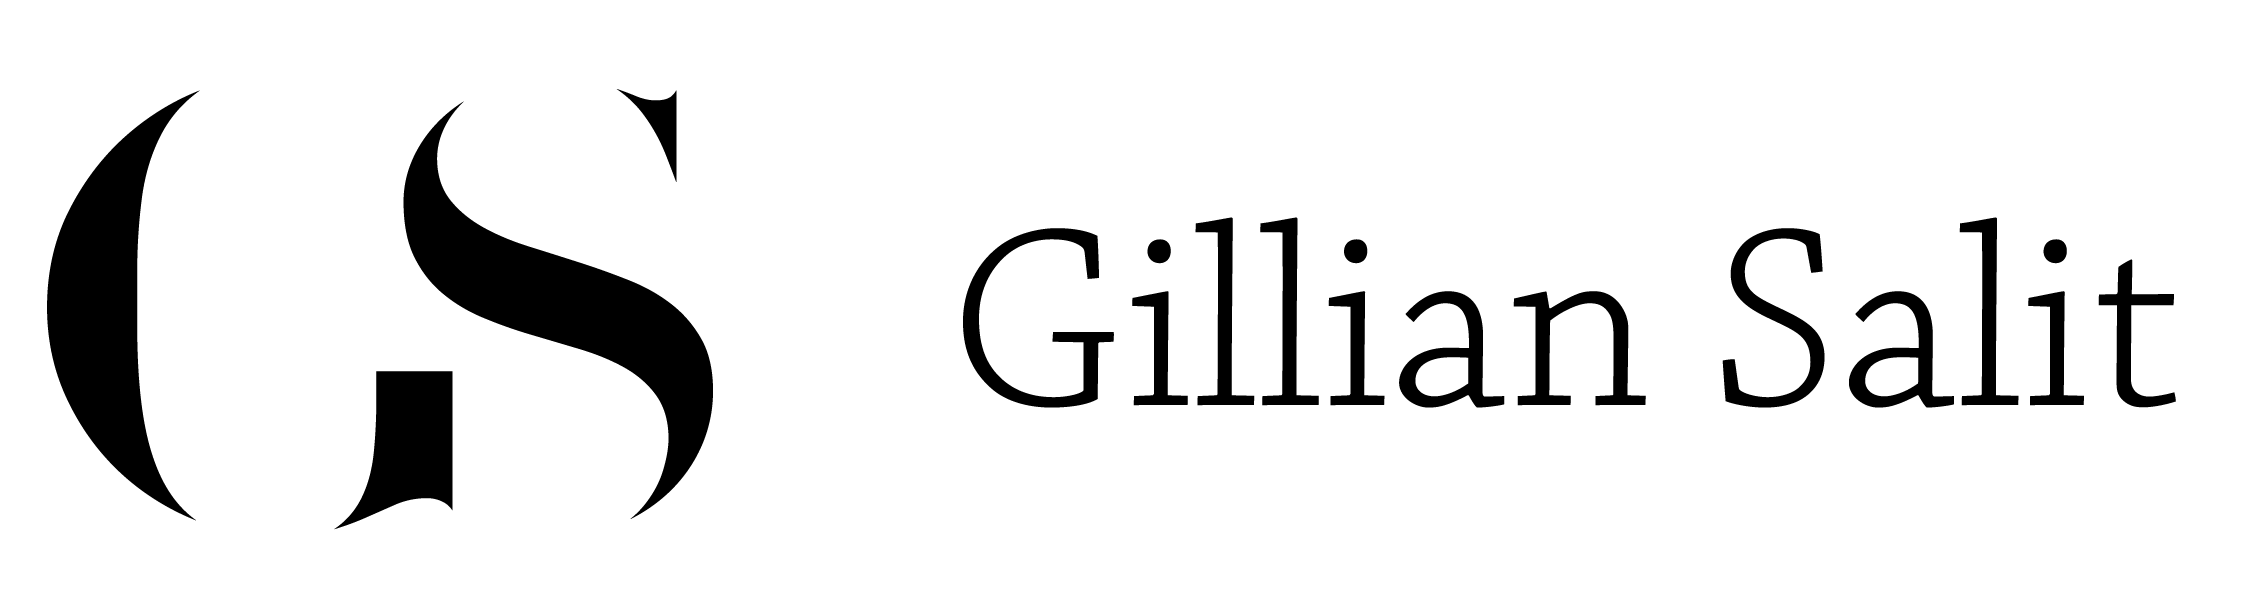 Gillian Salit